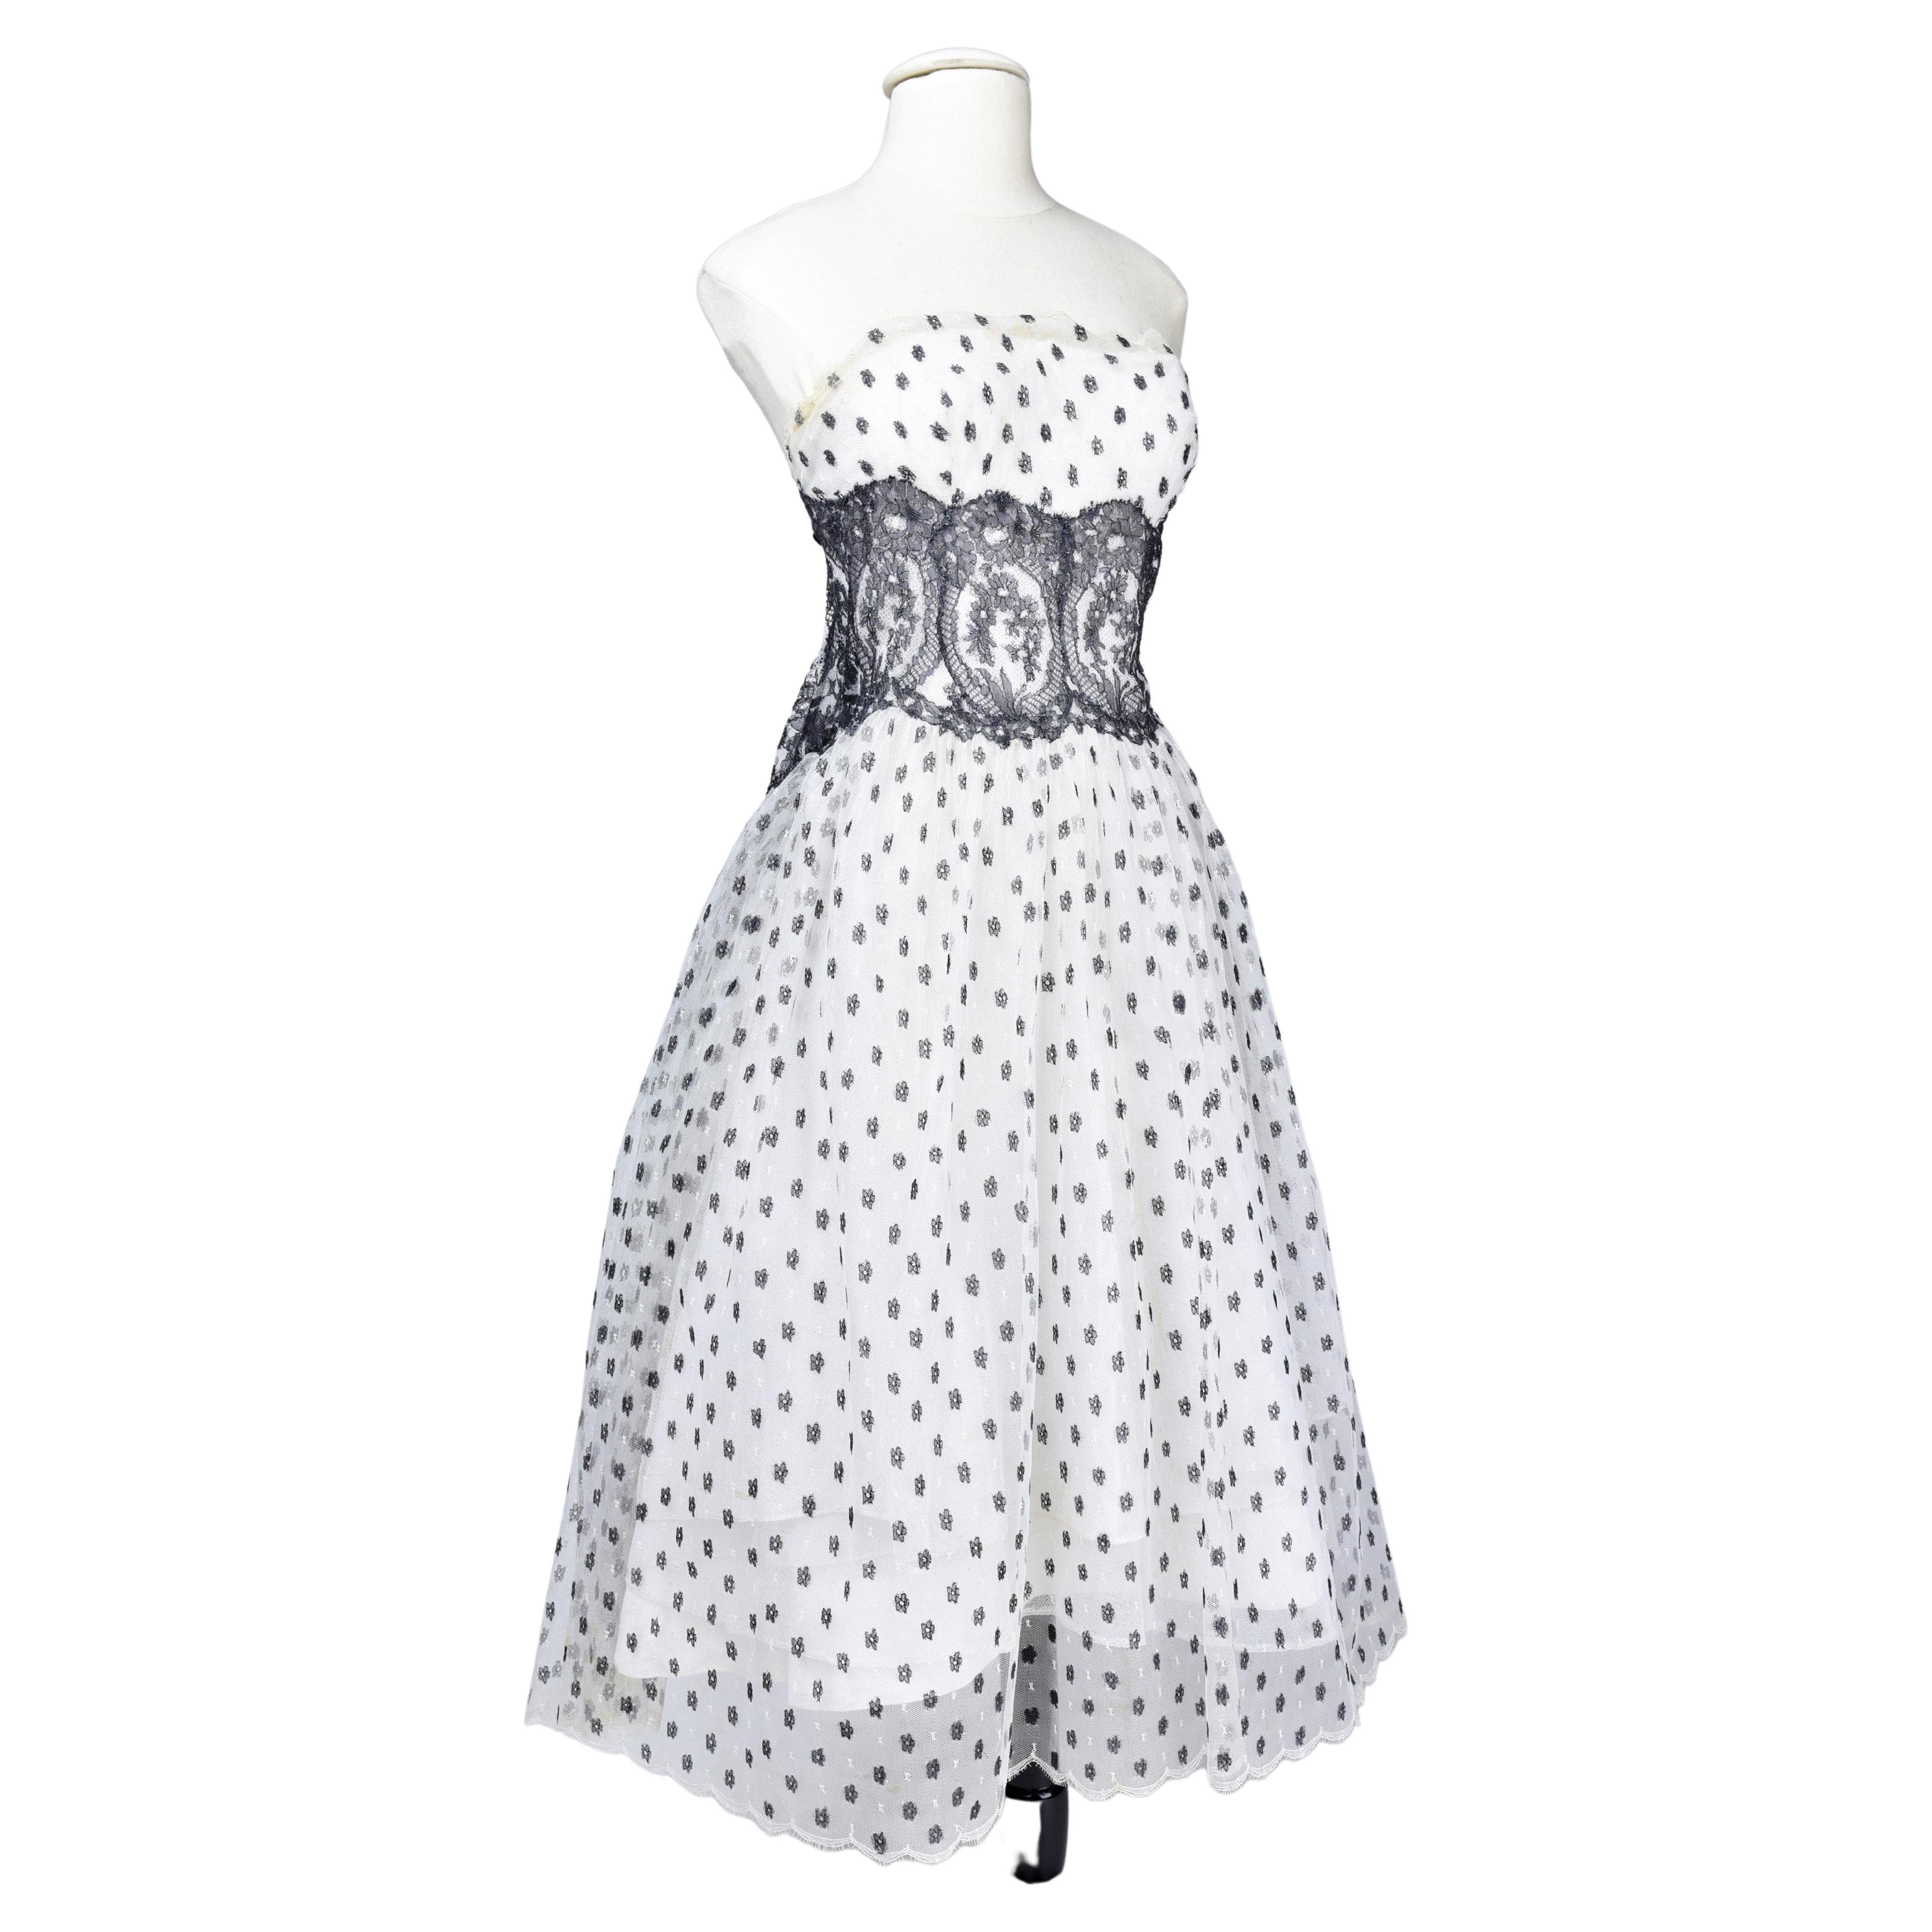 Vintage 1950s French Original Sky Blue Evening Handmade Dress With